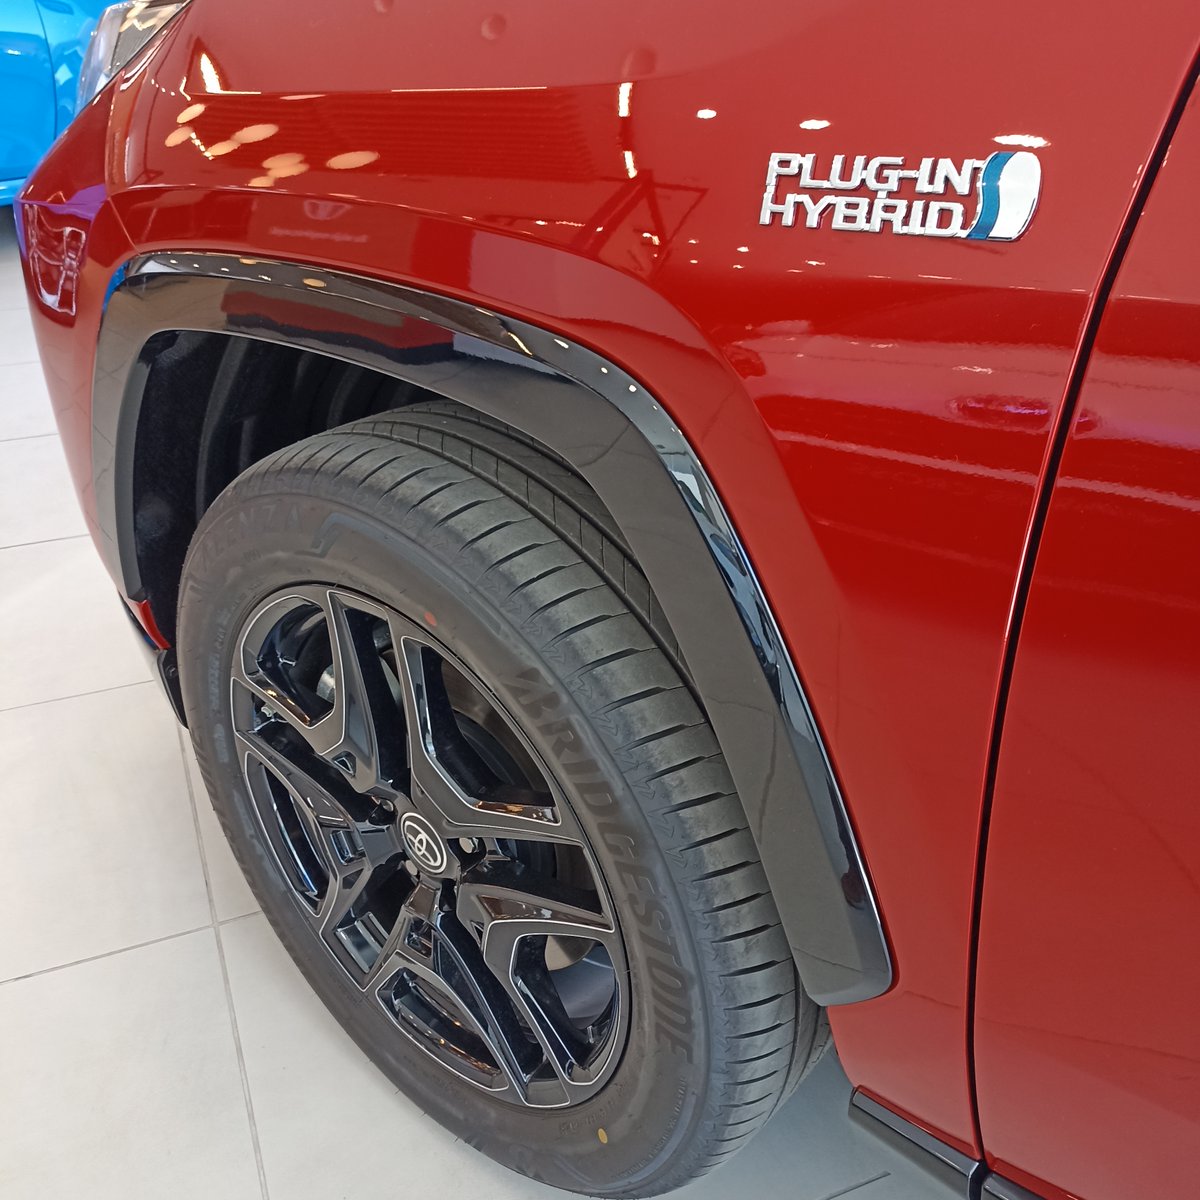 ToyotaValladoli tweet picture